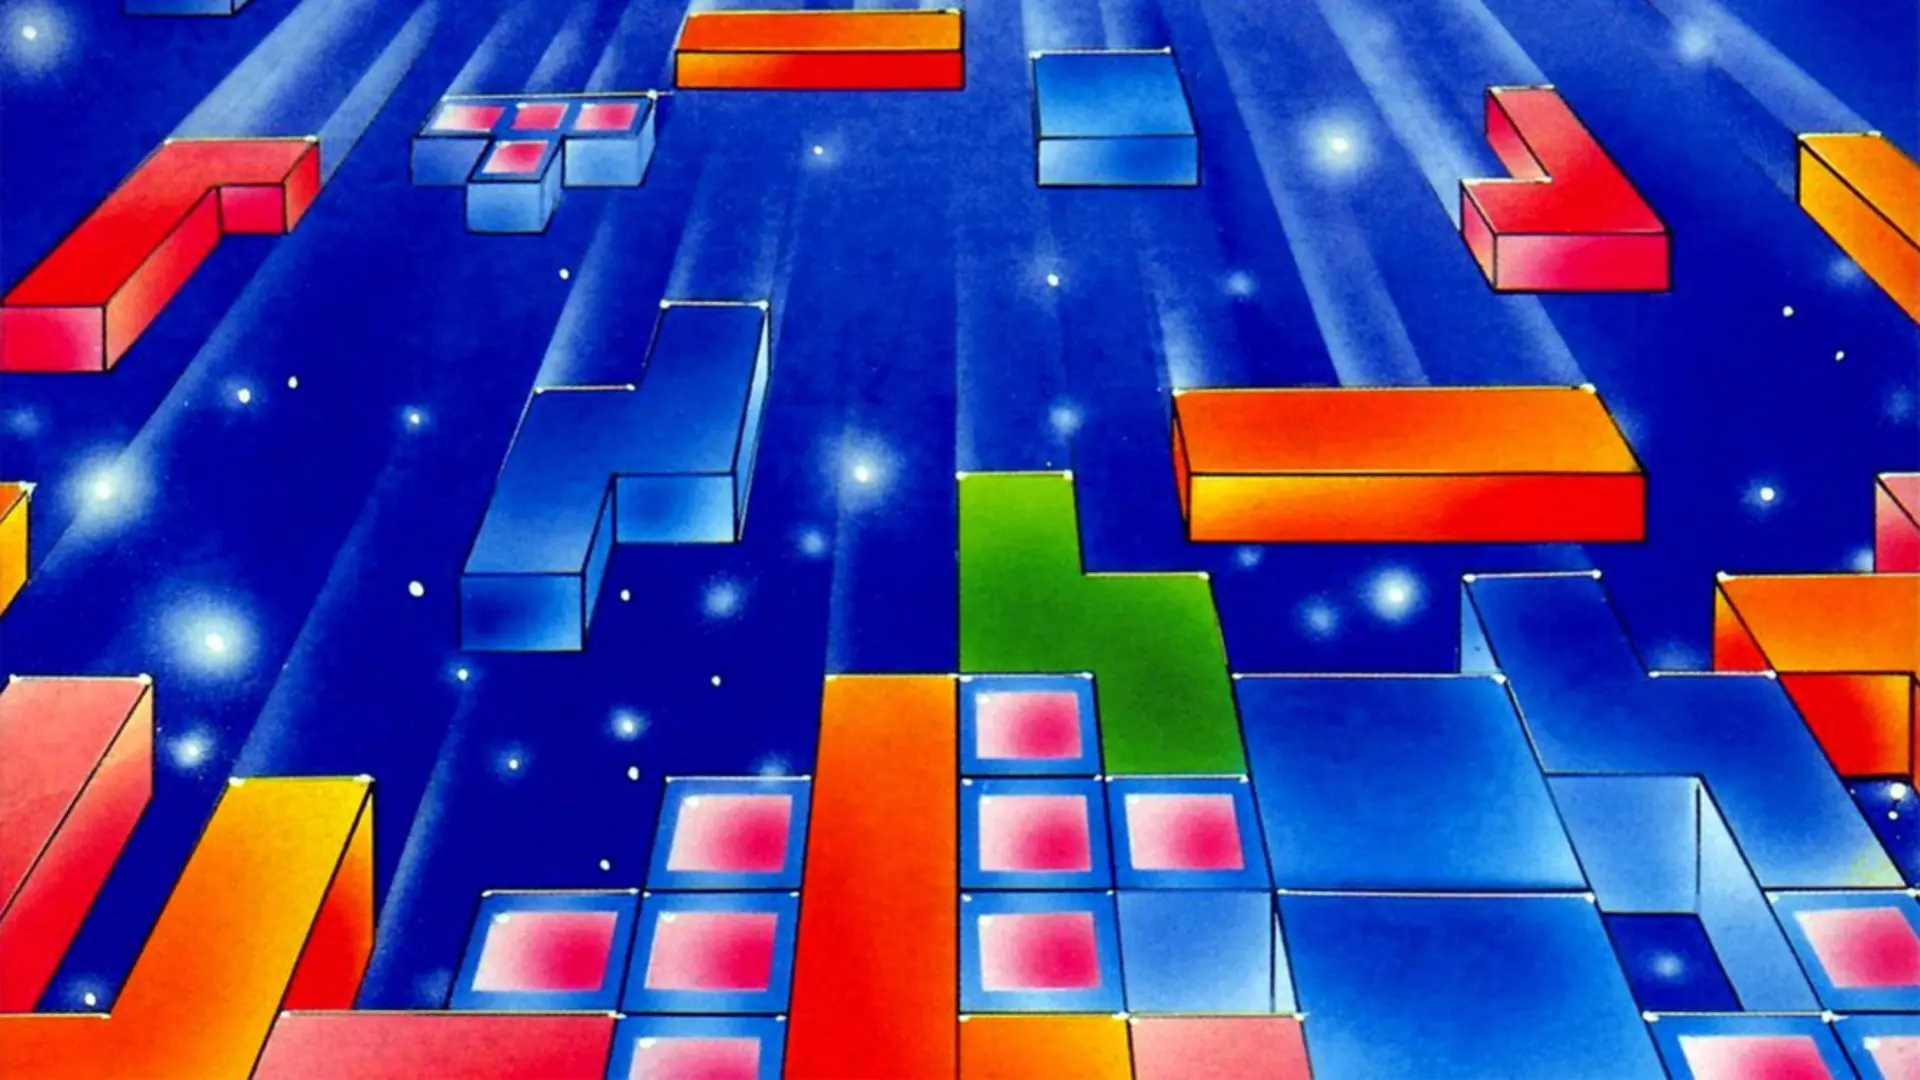 Jouer à Tetris permettrait de réduire les addictions